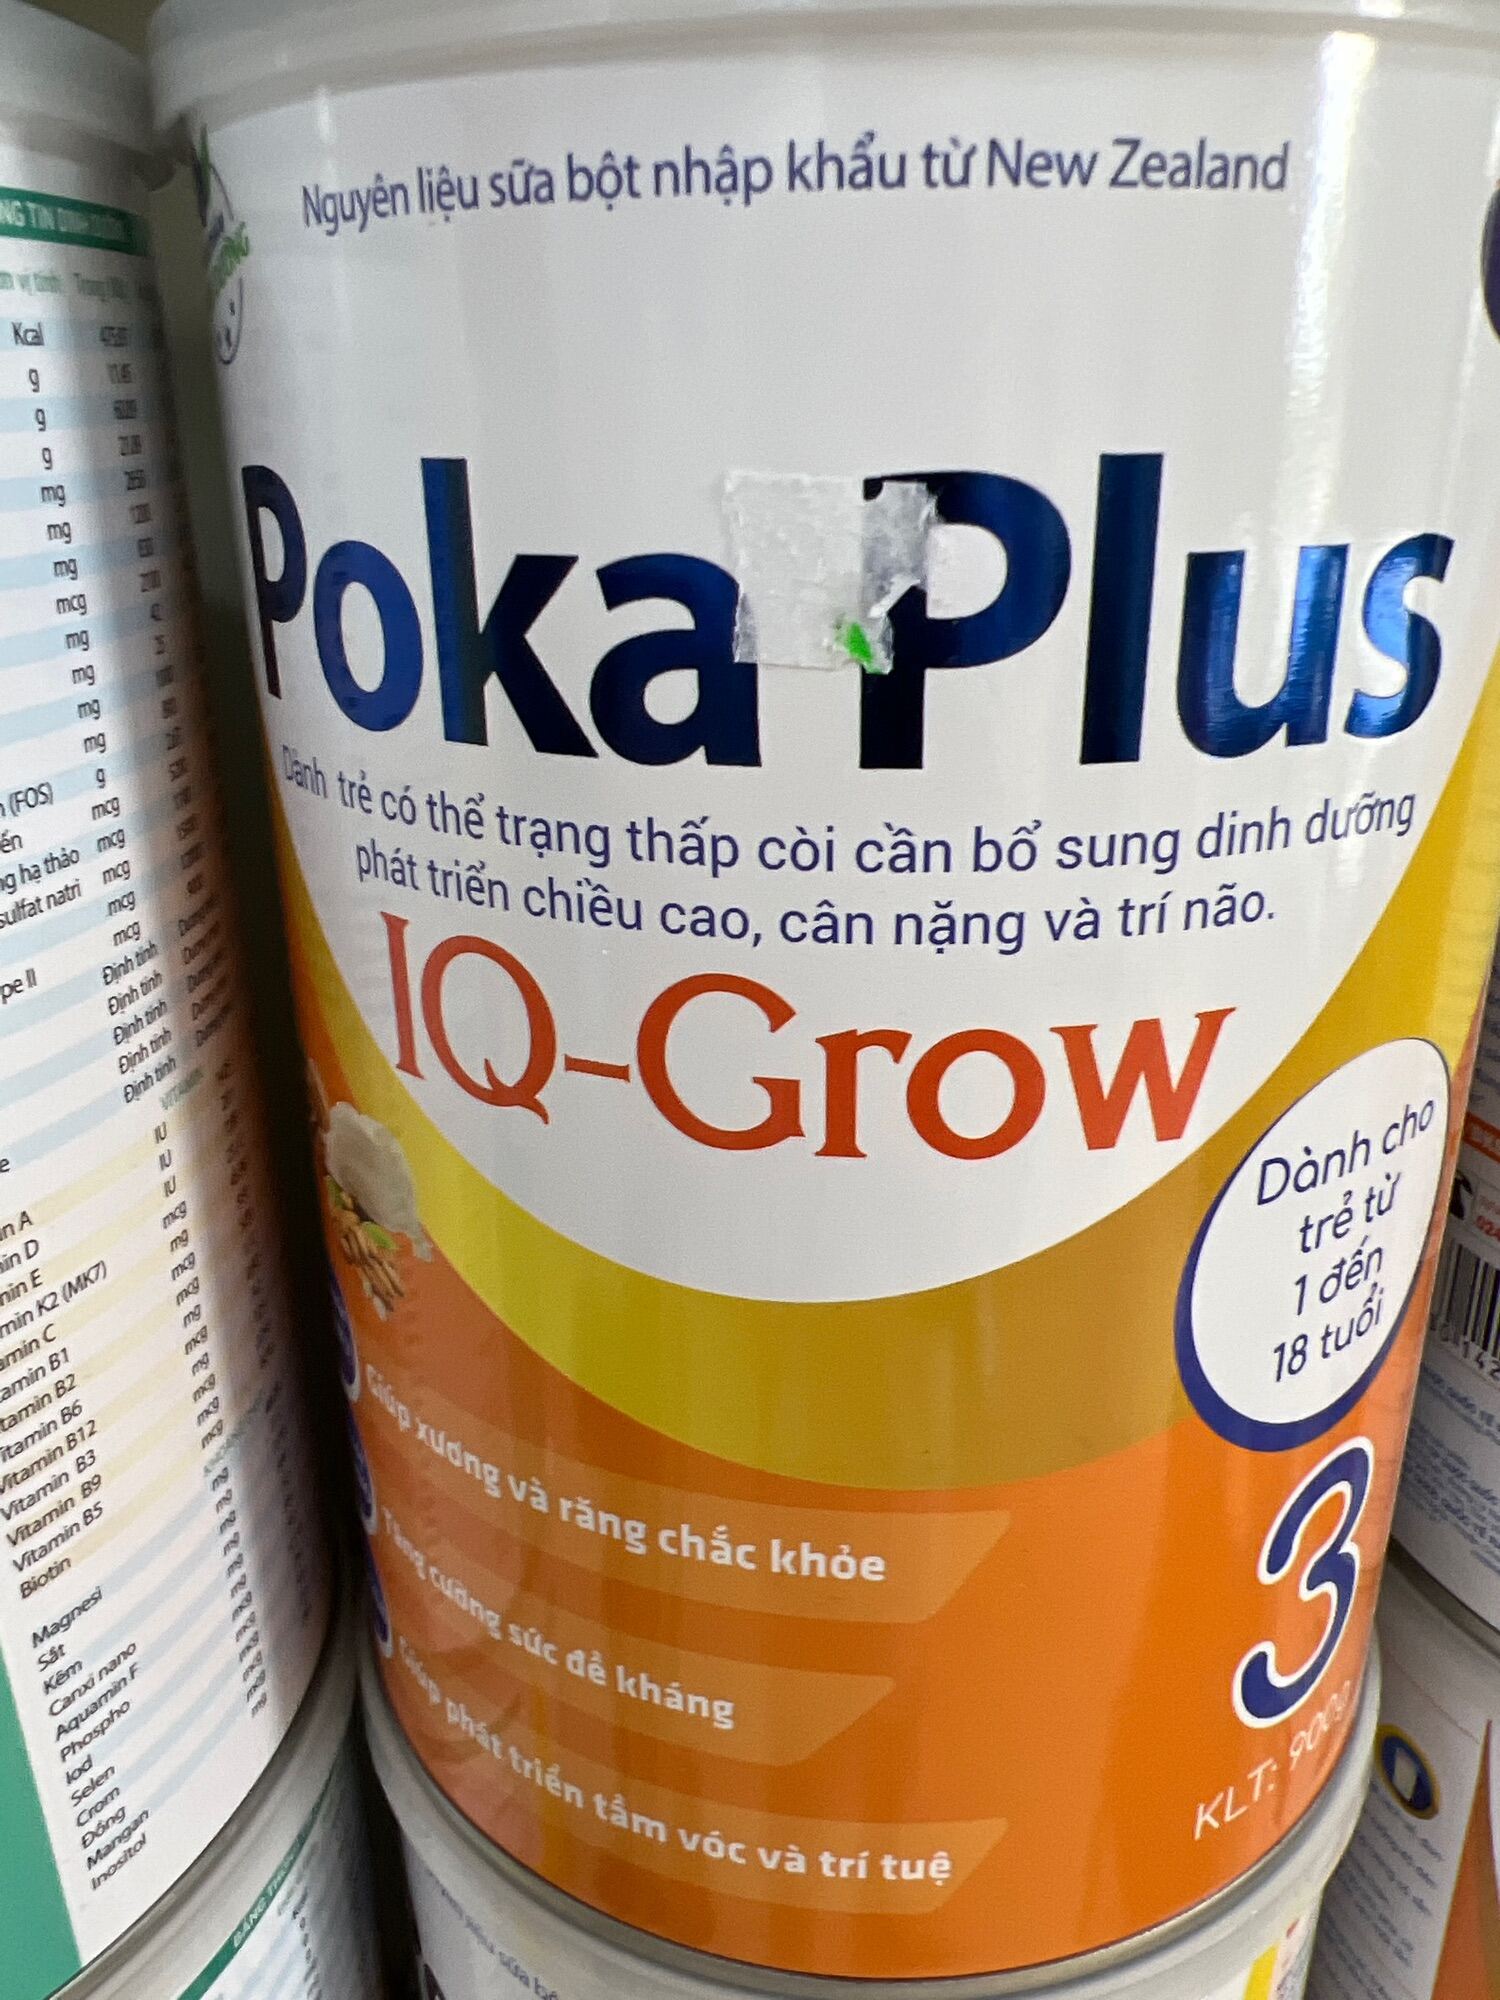 poka plus IQ grow